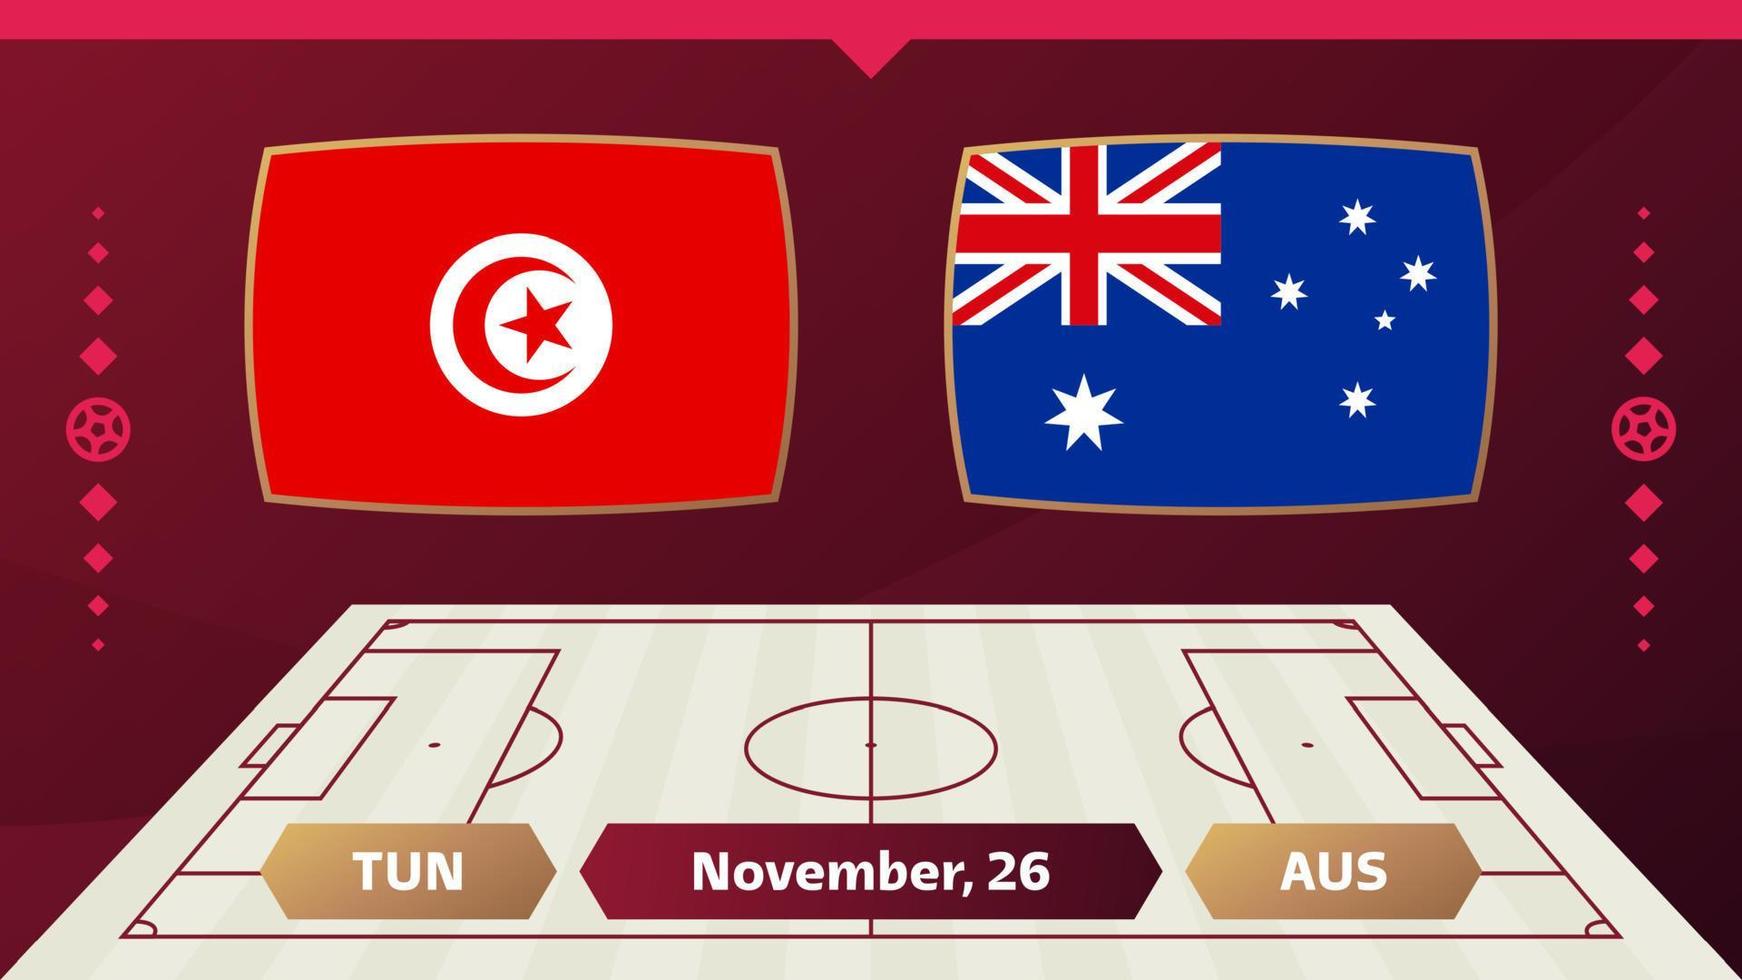 partita tunisia vs australia. partita del campionato mondiale di calcio 2022 contro le squadre sul campo di calcio. sfondo sportivo introduttivo, poster finale della competizione del campionato, illustrazione vettoriale in stile piatto